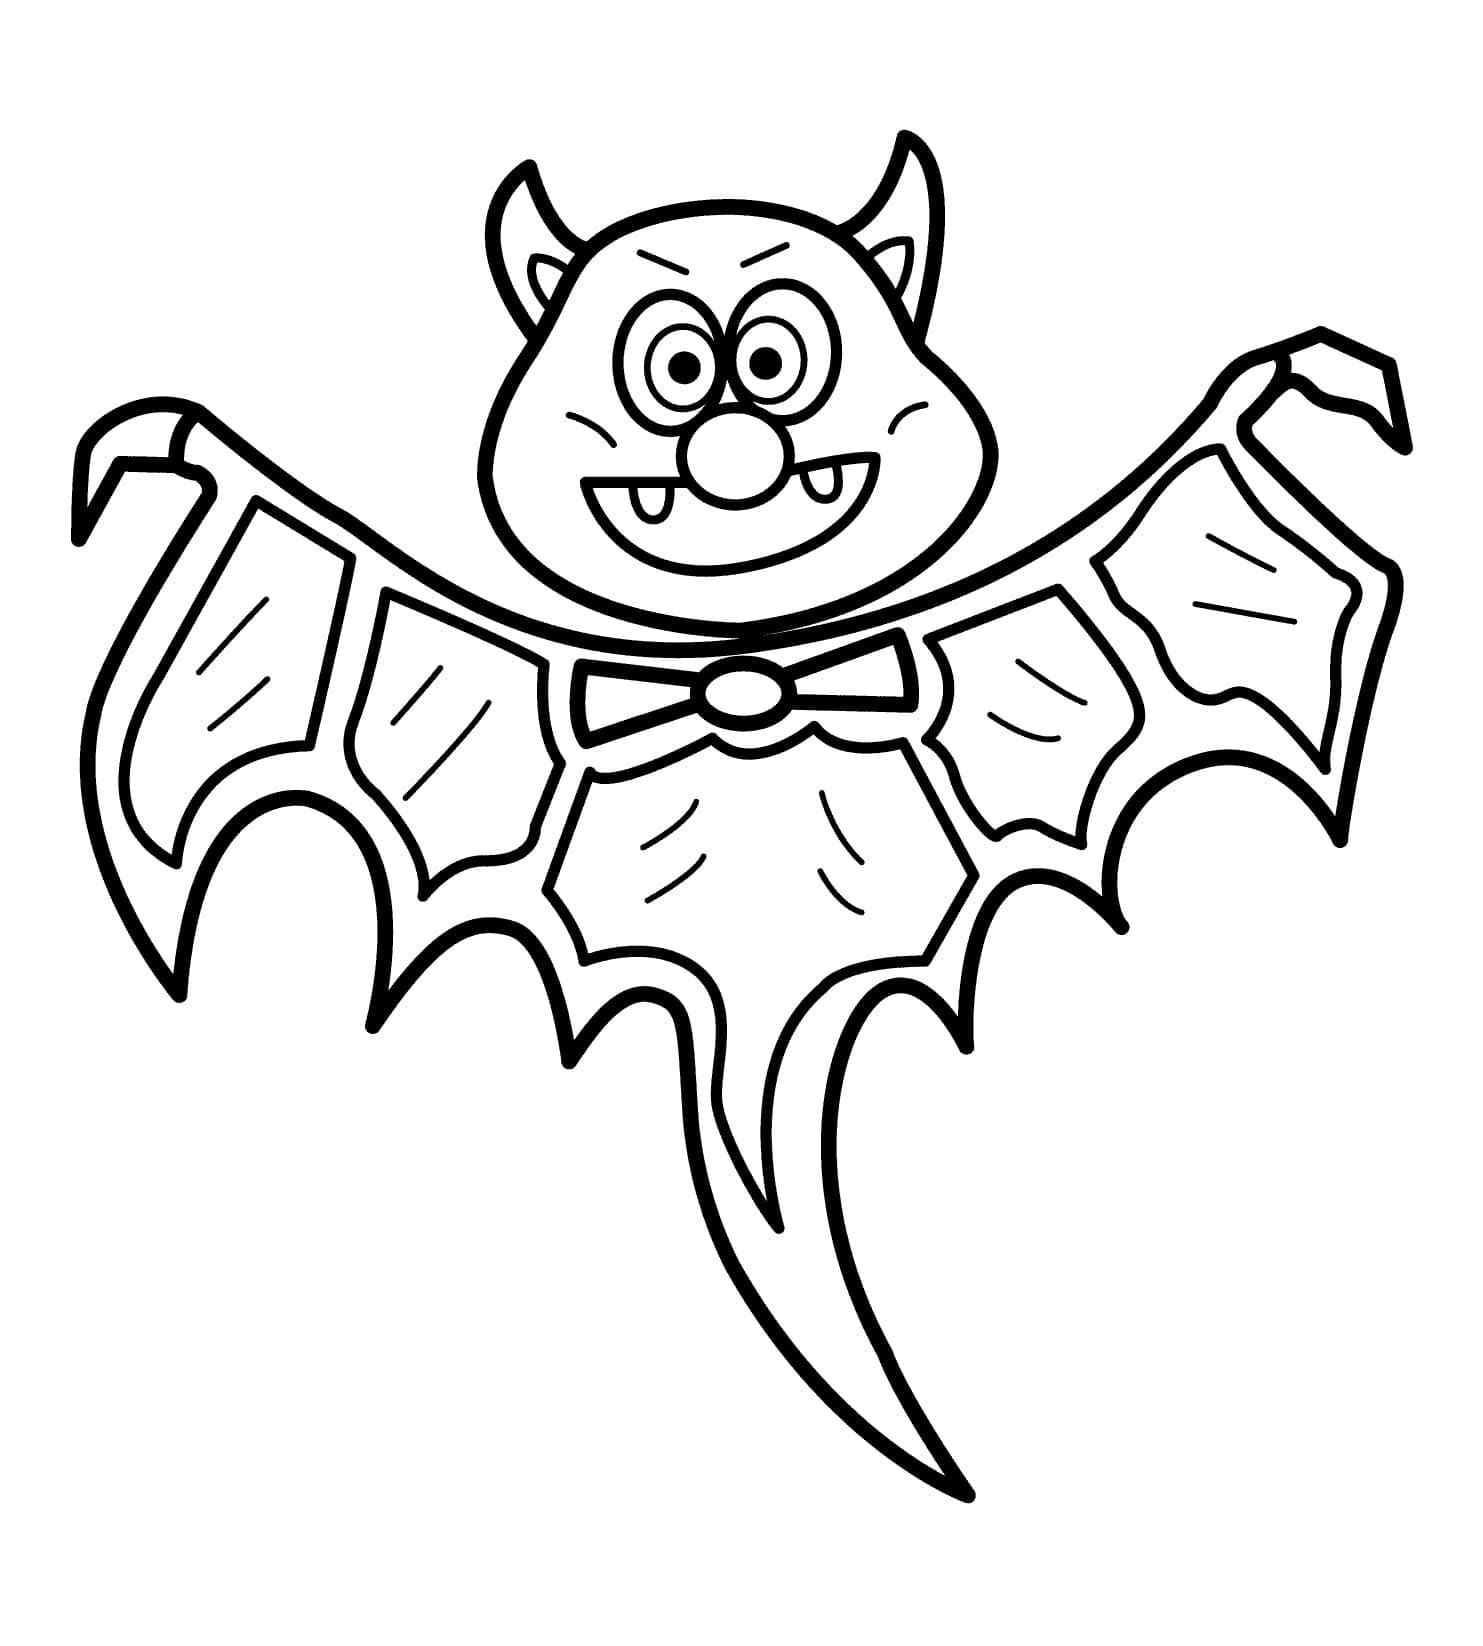 Une Chauve-souris d’Halloween coloring page